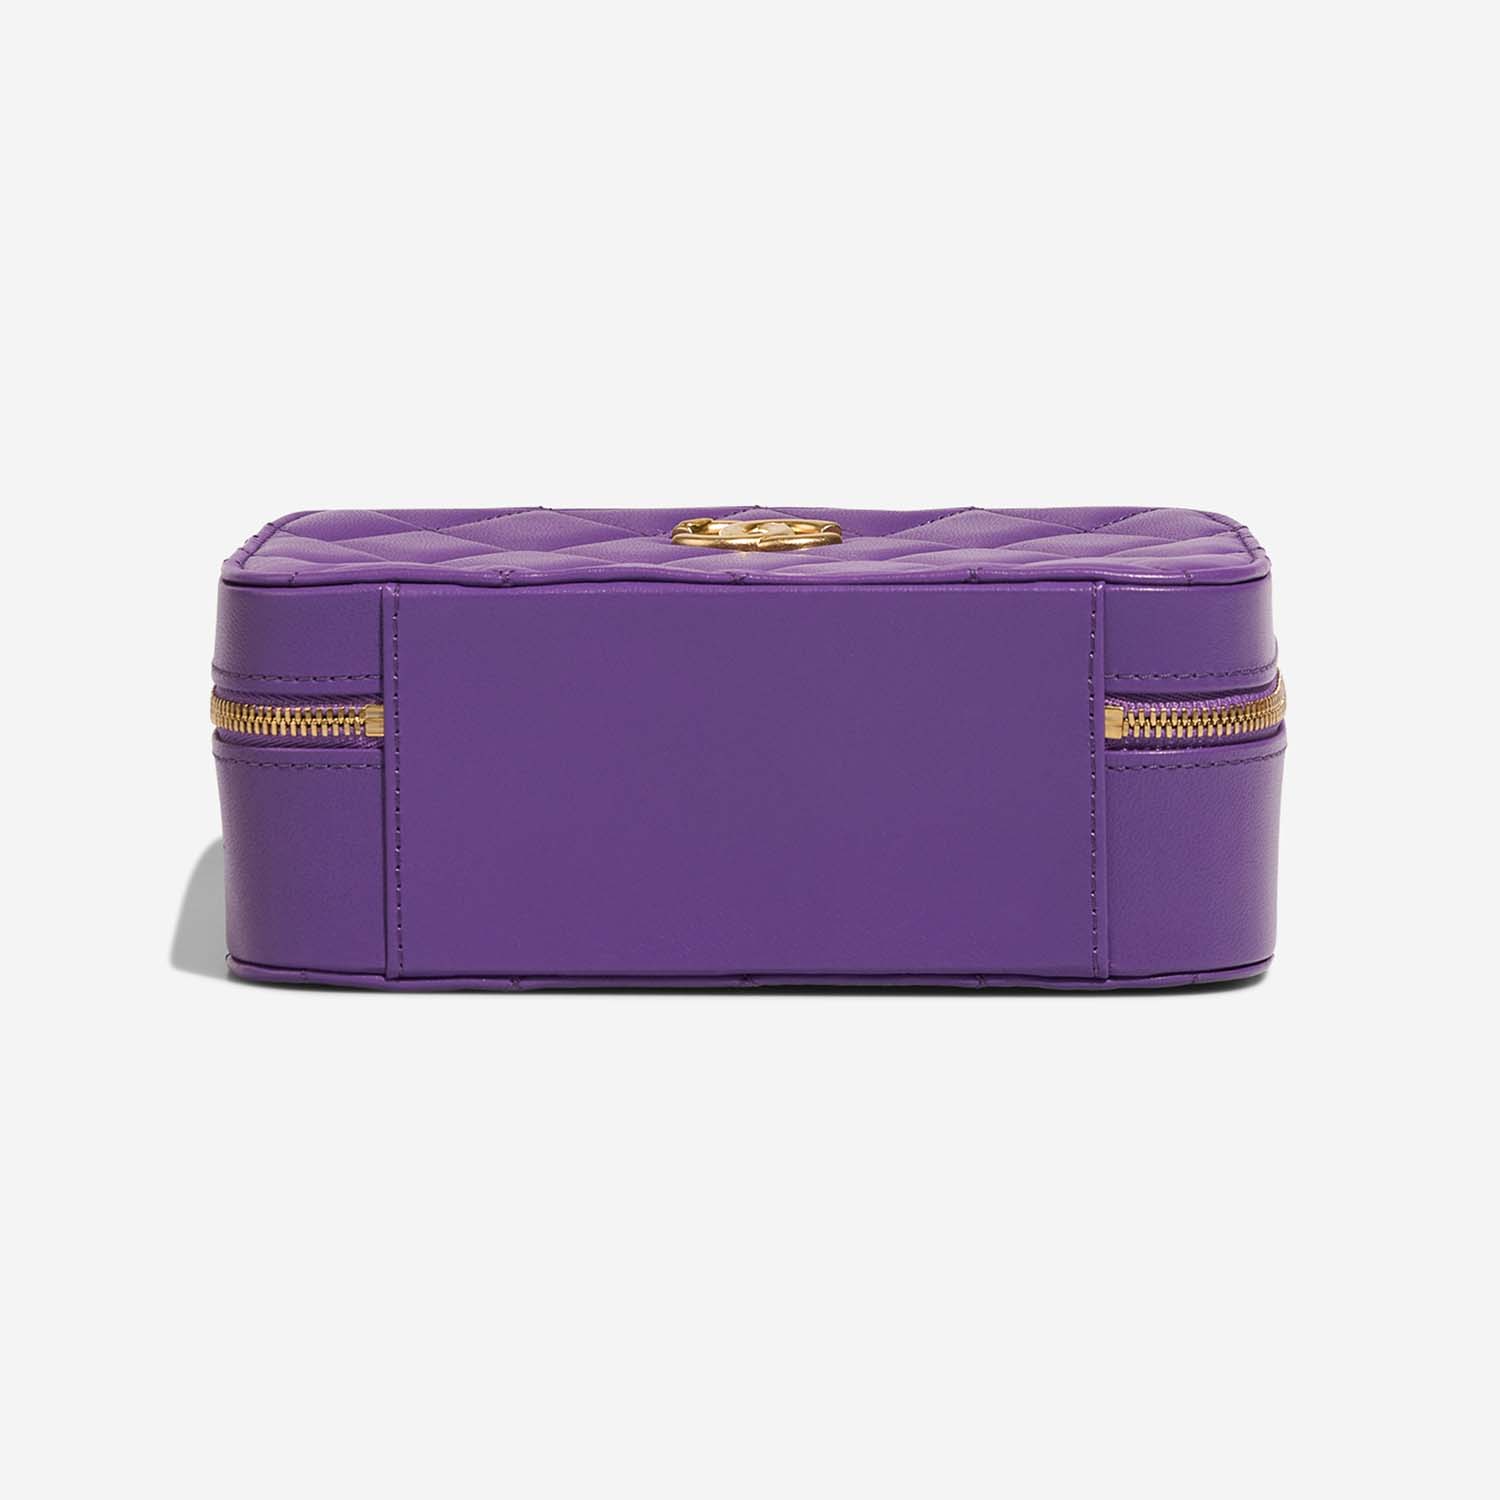 Chanel Vanity Small Violet Bottom | Verkaufen Sie Ihre Designer-Tasche auf Saclab.com